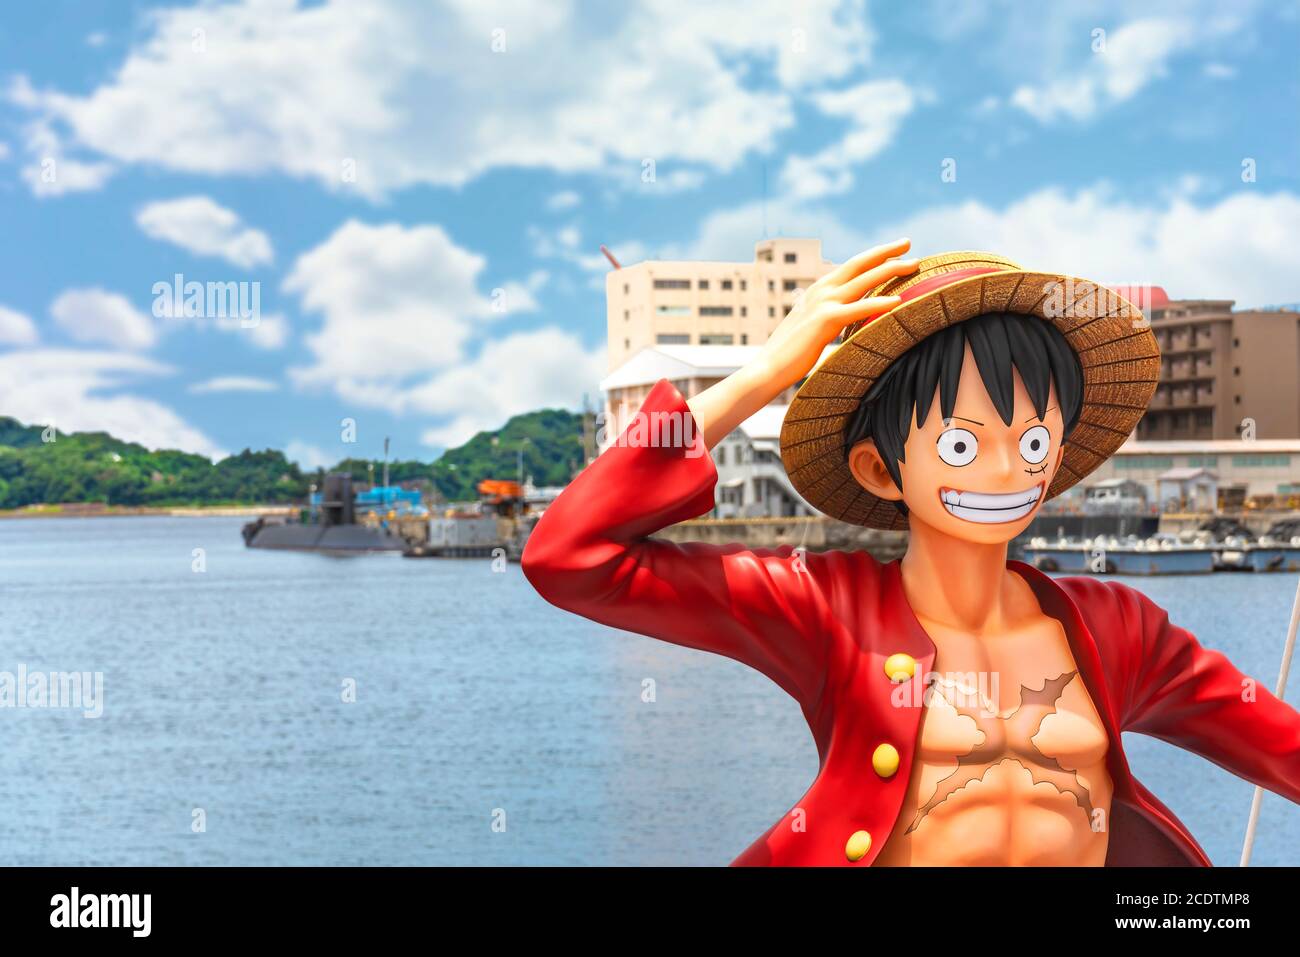 kanagawa, japon - juillet 19 2020 : gros plan sur le buste de la figurine de taille réelle du héros Monkey D. Luffy de la manga une pièce par Eiichiro Oda on Banque D'Images